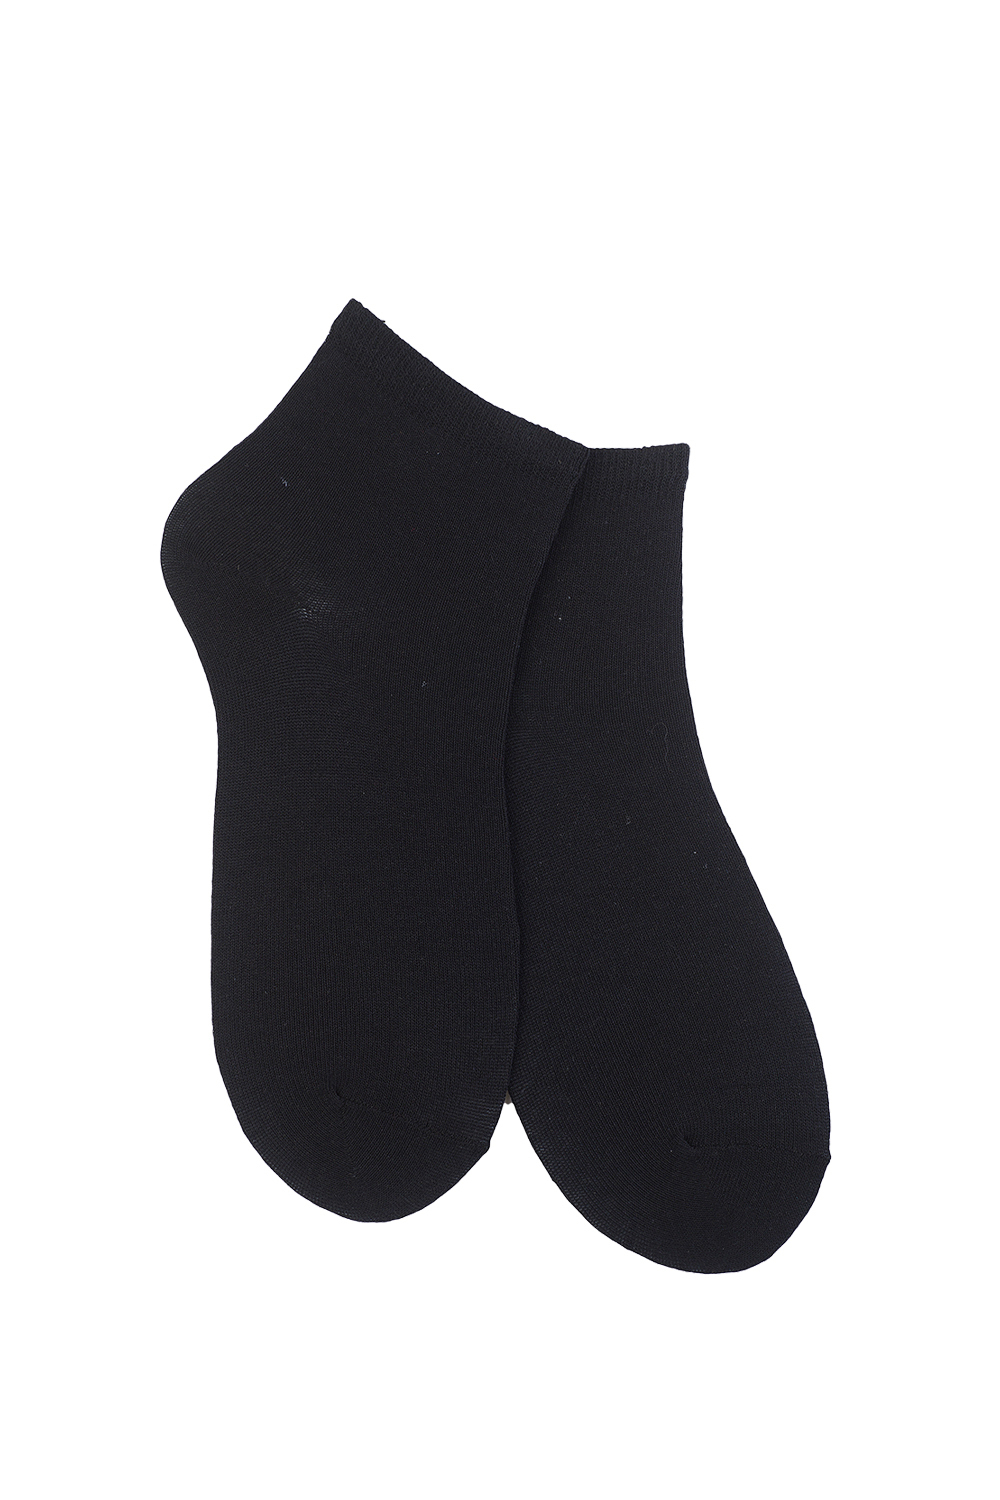 Носки женские, комплект 6 пар (3 пары черные + 3 пары серые)